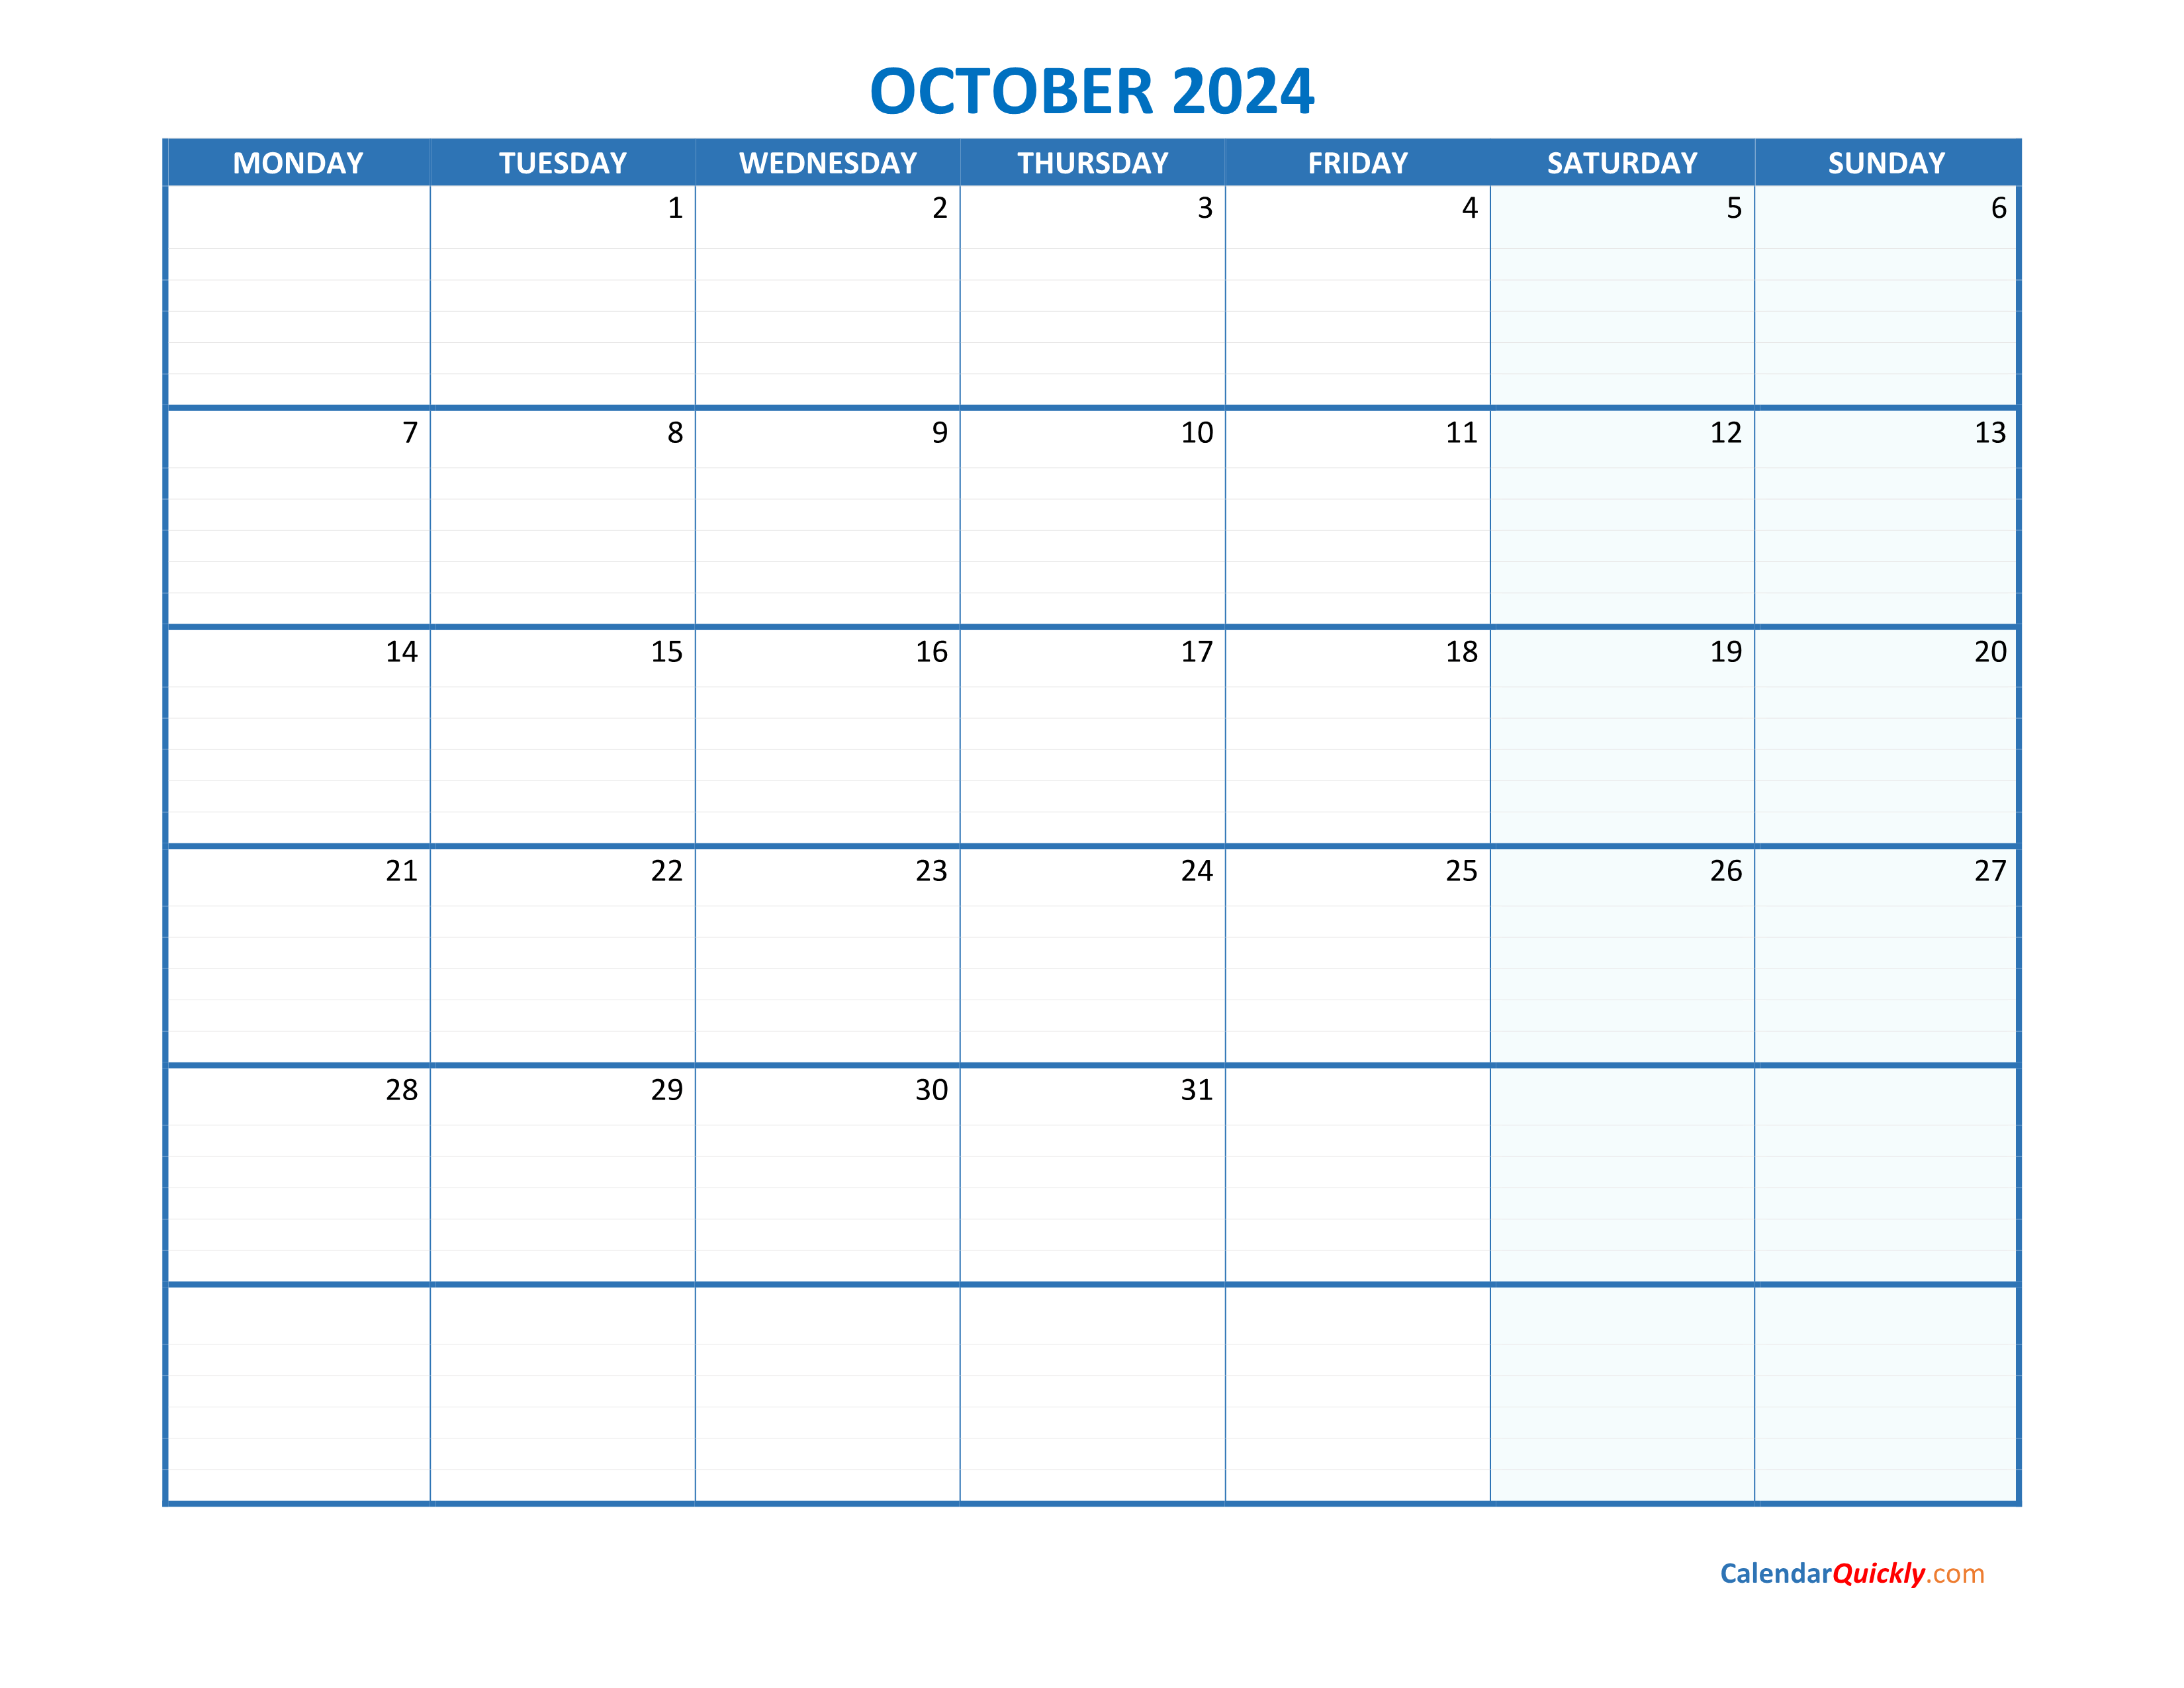 october-monday-2024-blank-calendar-calendar-quickly